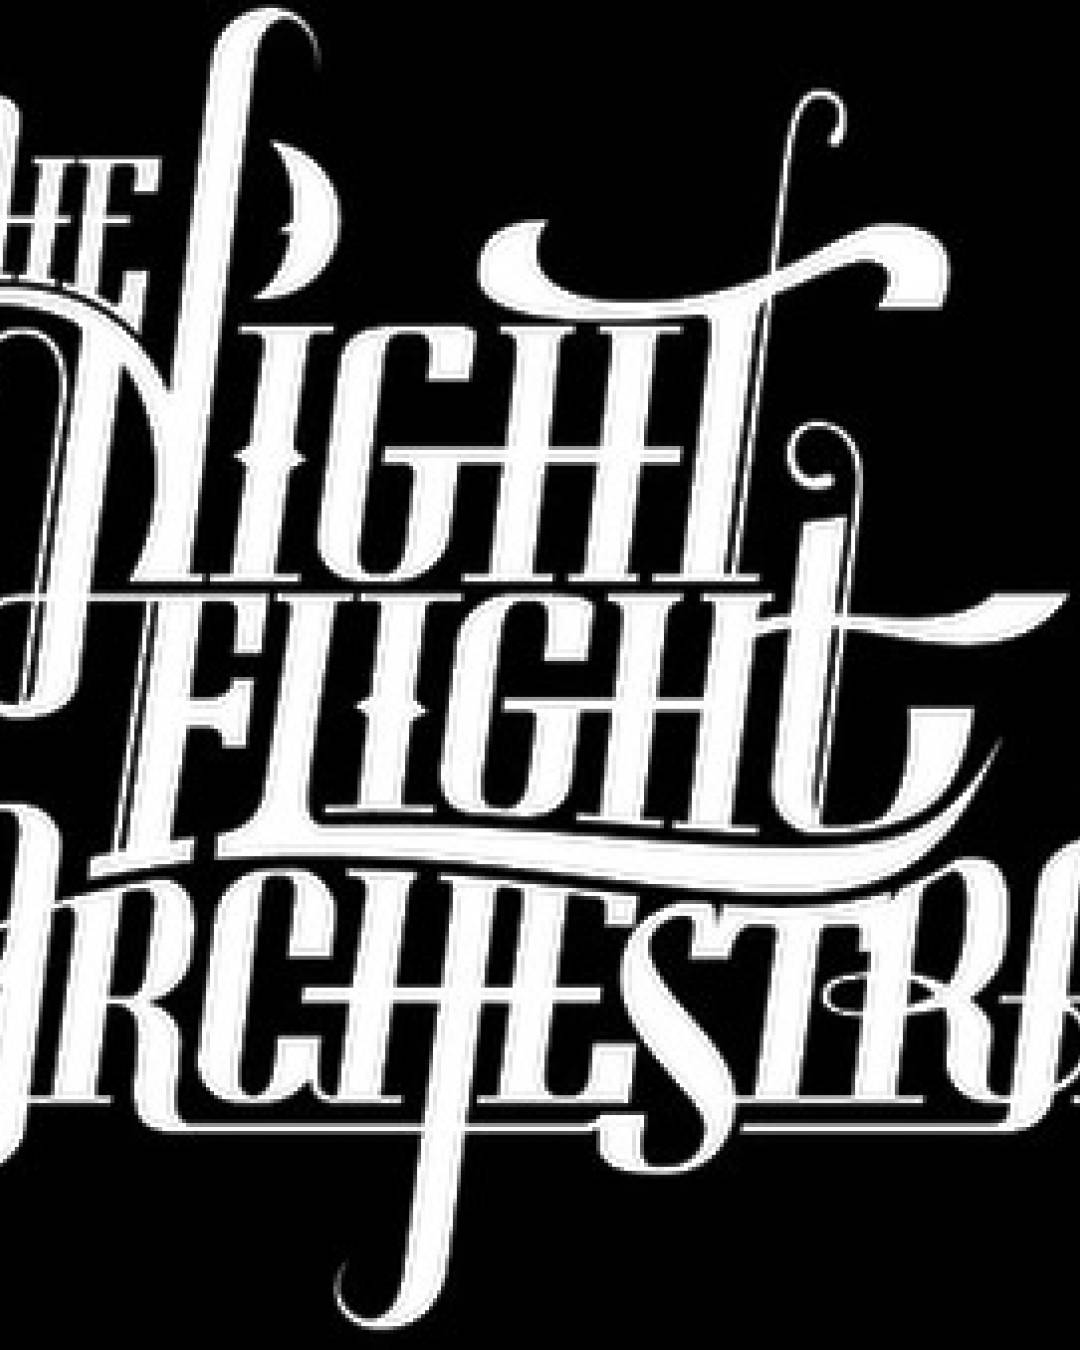 The night orchestra. The Night Flight Orchestra Band. Логотип Orchestra Band. Orchestra Flight. The Classic Night Orchestra.